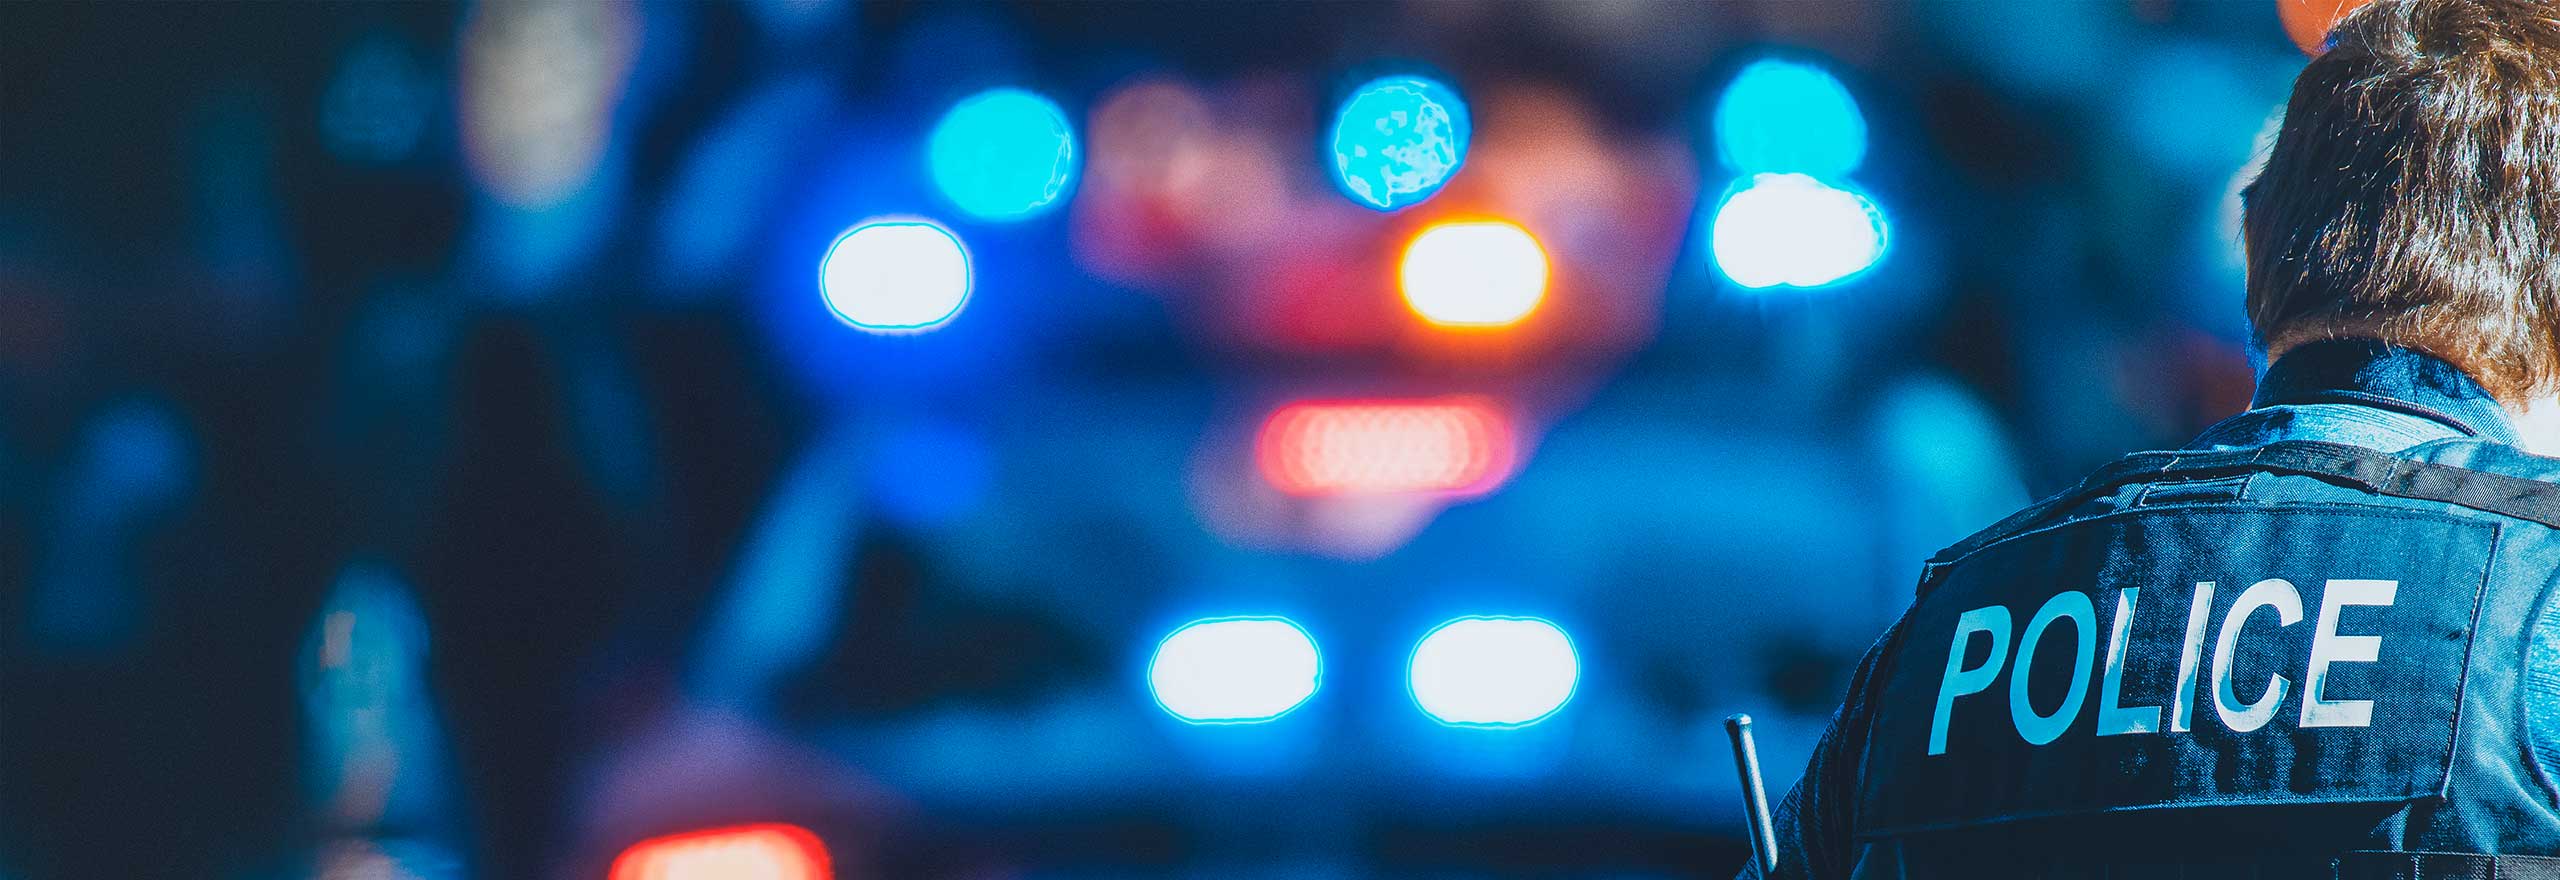 Luzes azuis de viatura policial brilhando à noite